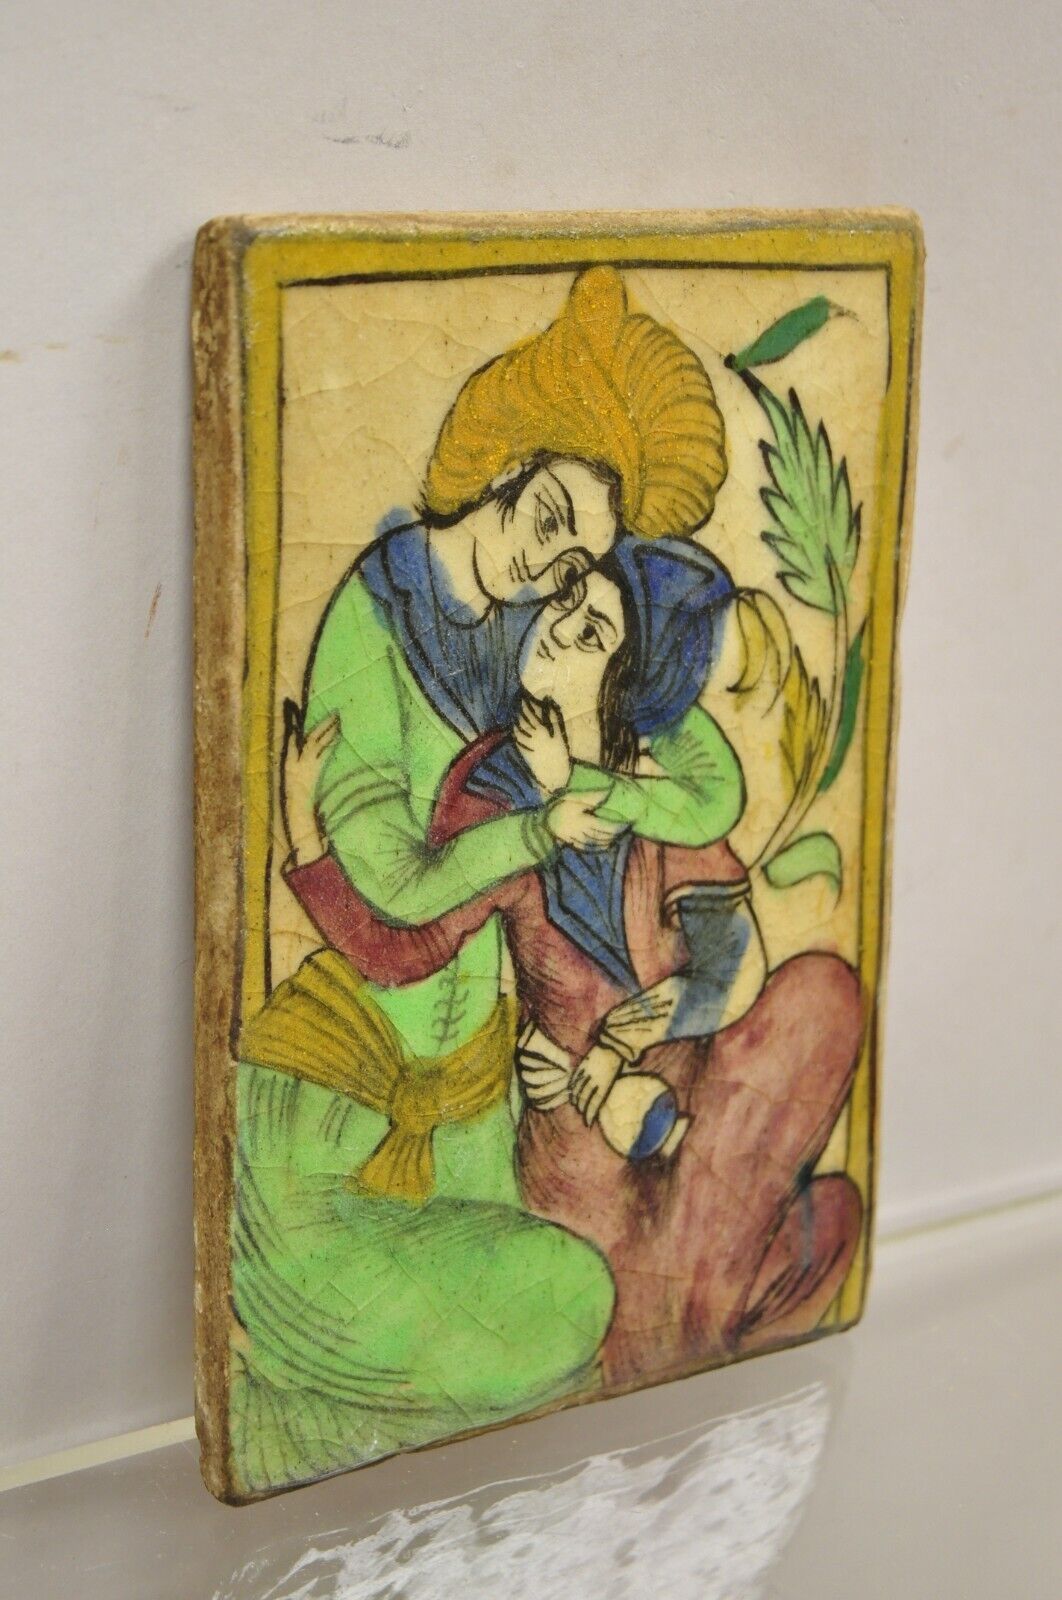 Antique Persian Iznik Qajar Style Green Ceramic Pottery Tile Loving Couple C5